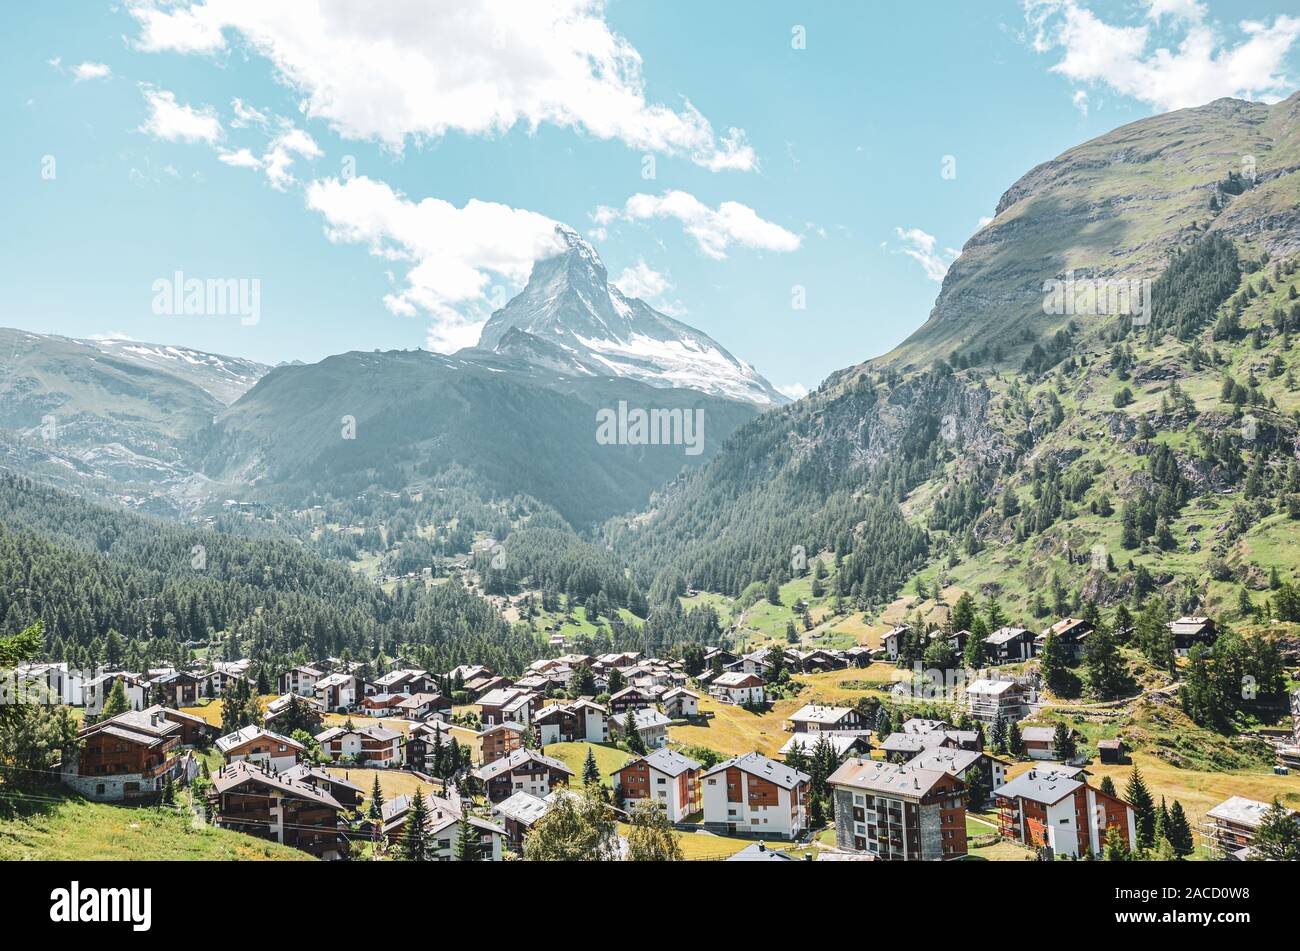 Malerische Bergdorf Zermatt in der Schweiz im Sommer. Berühmte Matterhorn im Hintergrund. Typische Almen. Schweizer Alpen, Alpine Landschaften. Stockfoto